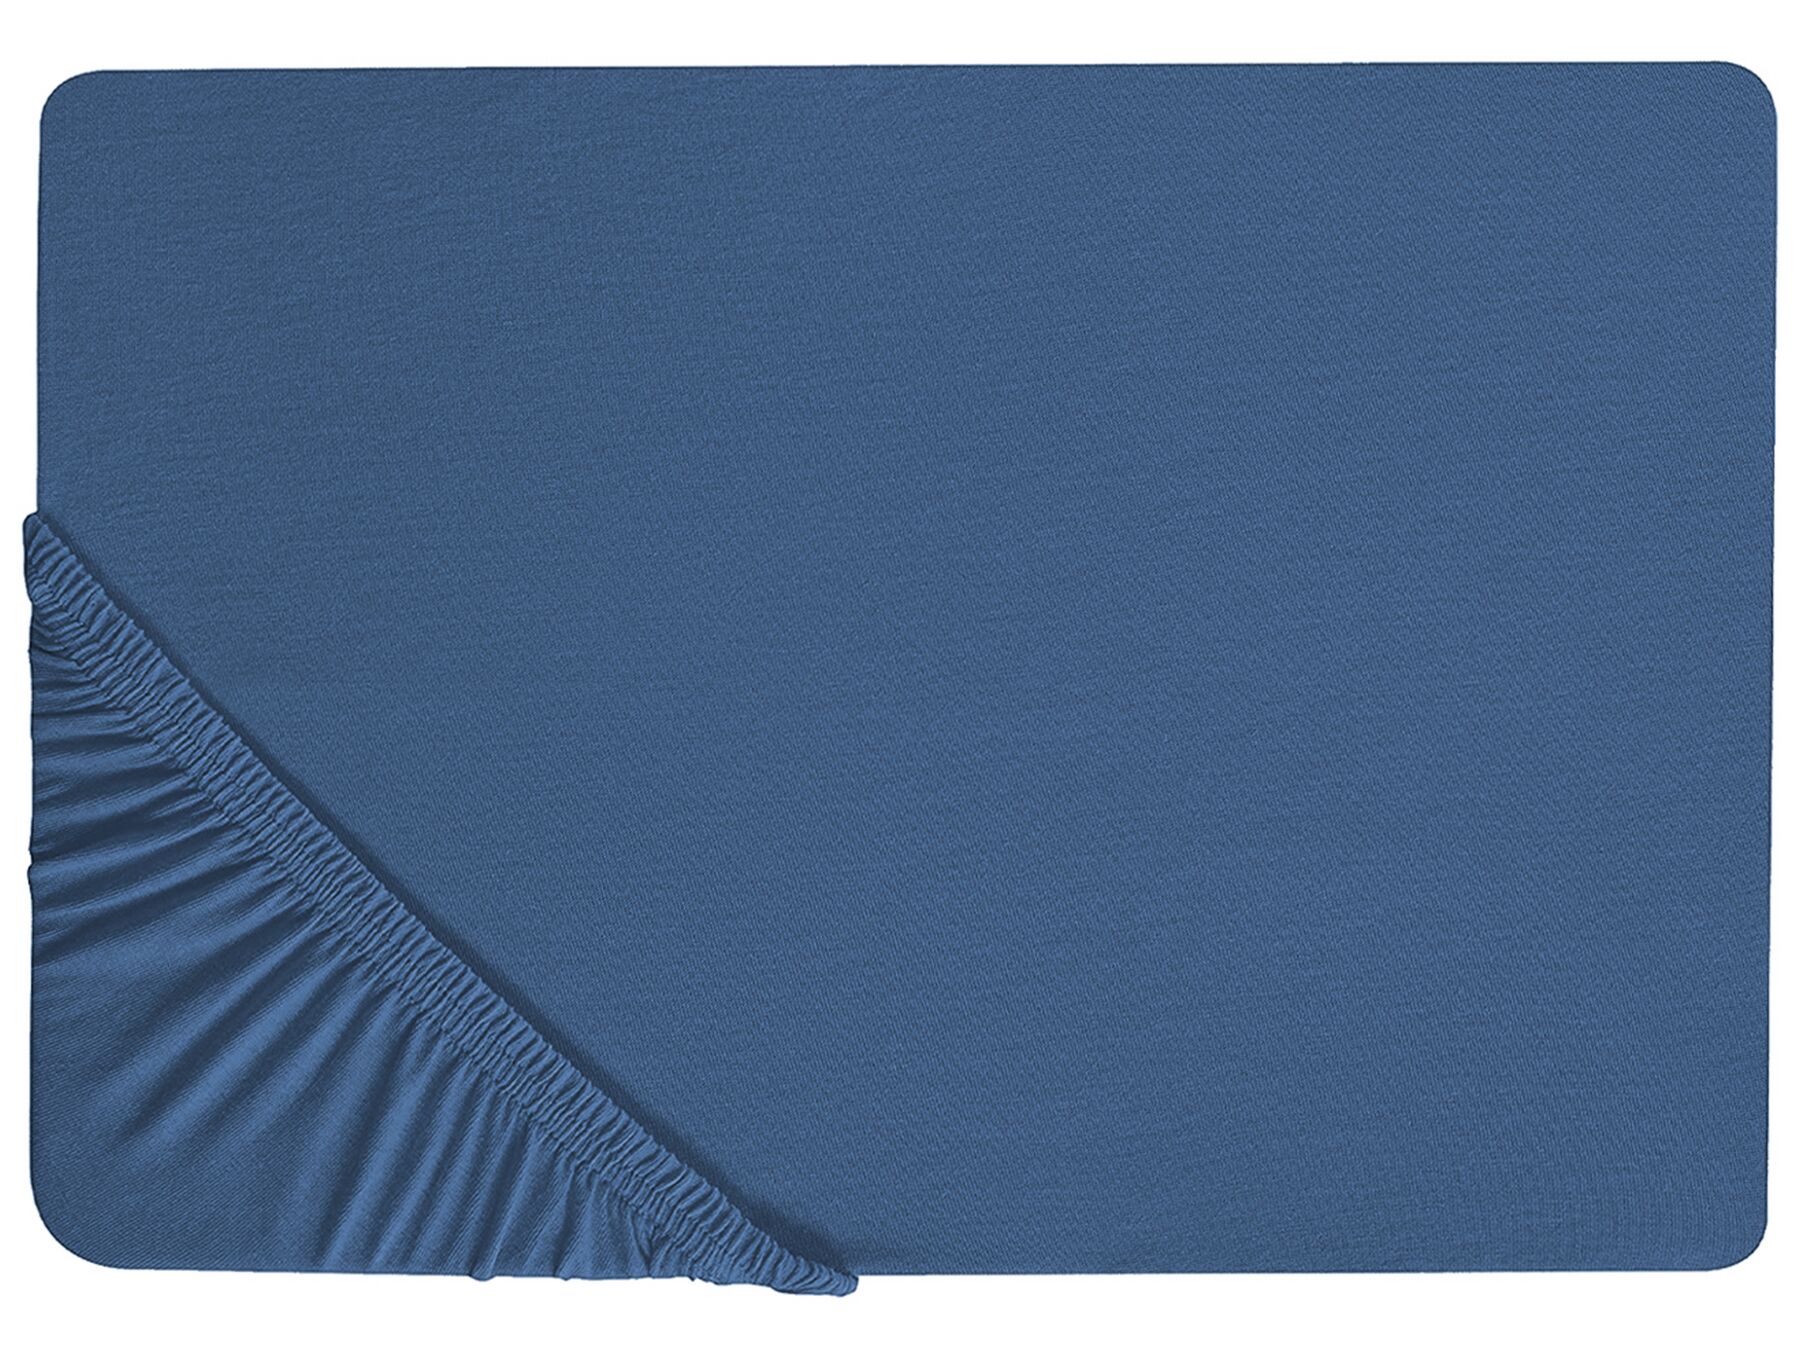 Stræklagen 90 x 200 cm marineblå bomuld JANBU_845239